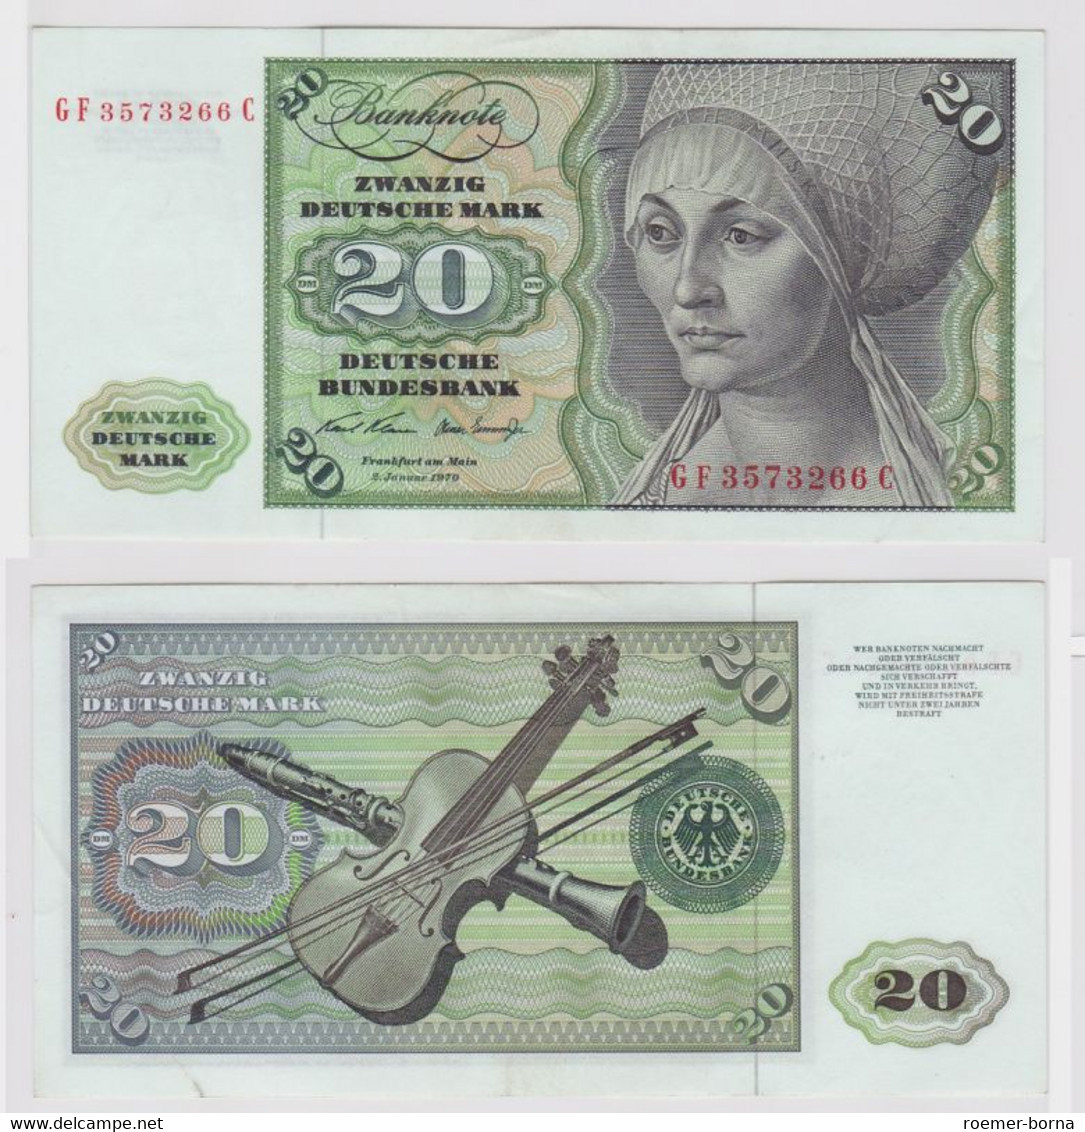 T147971 Banknote 20 DM Deutsche Mark Ro. 271b Schein 2.Jan. 1970 KN GF 3573266 C - 20 DM